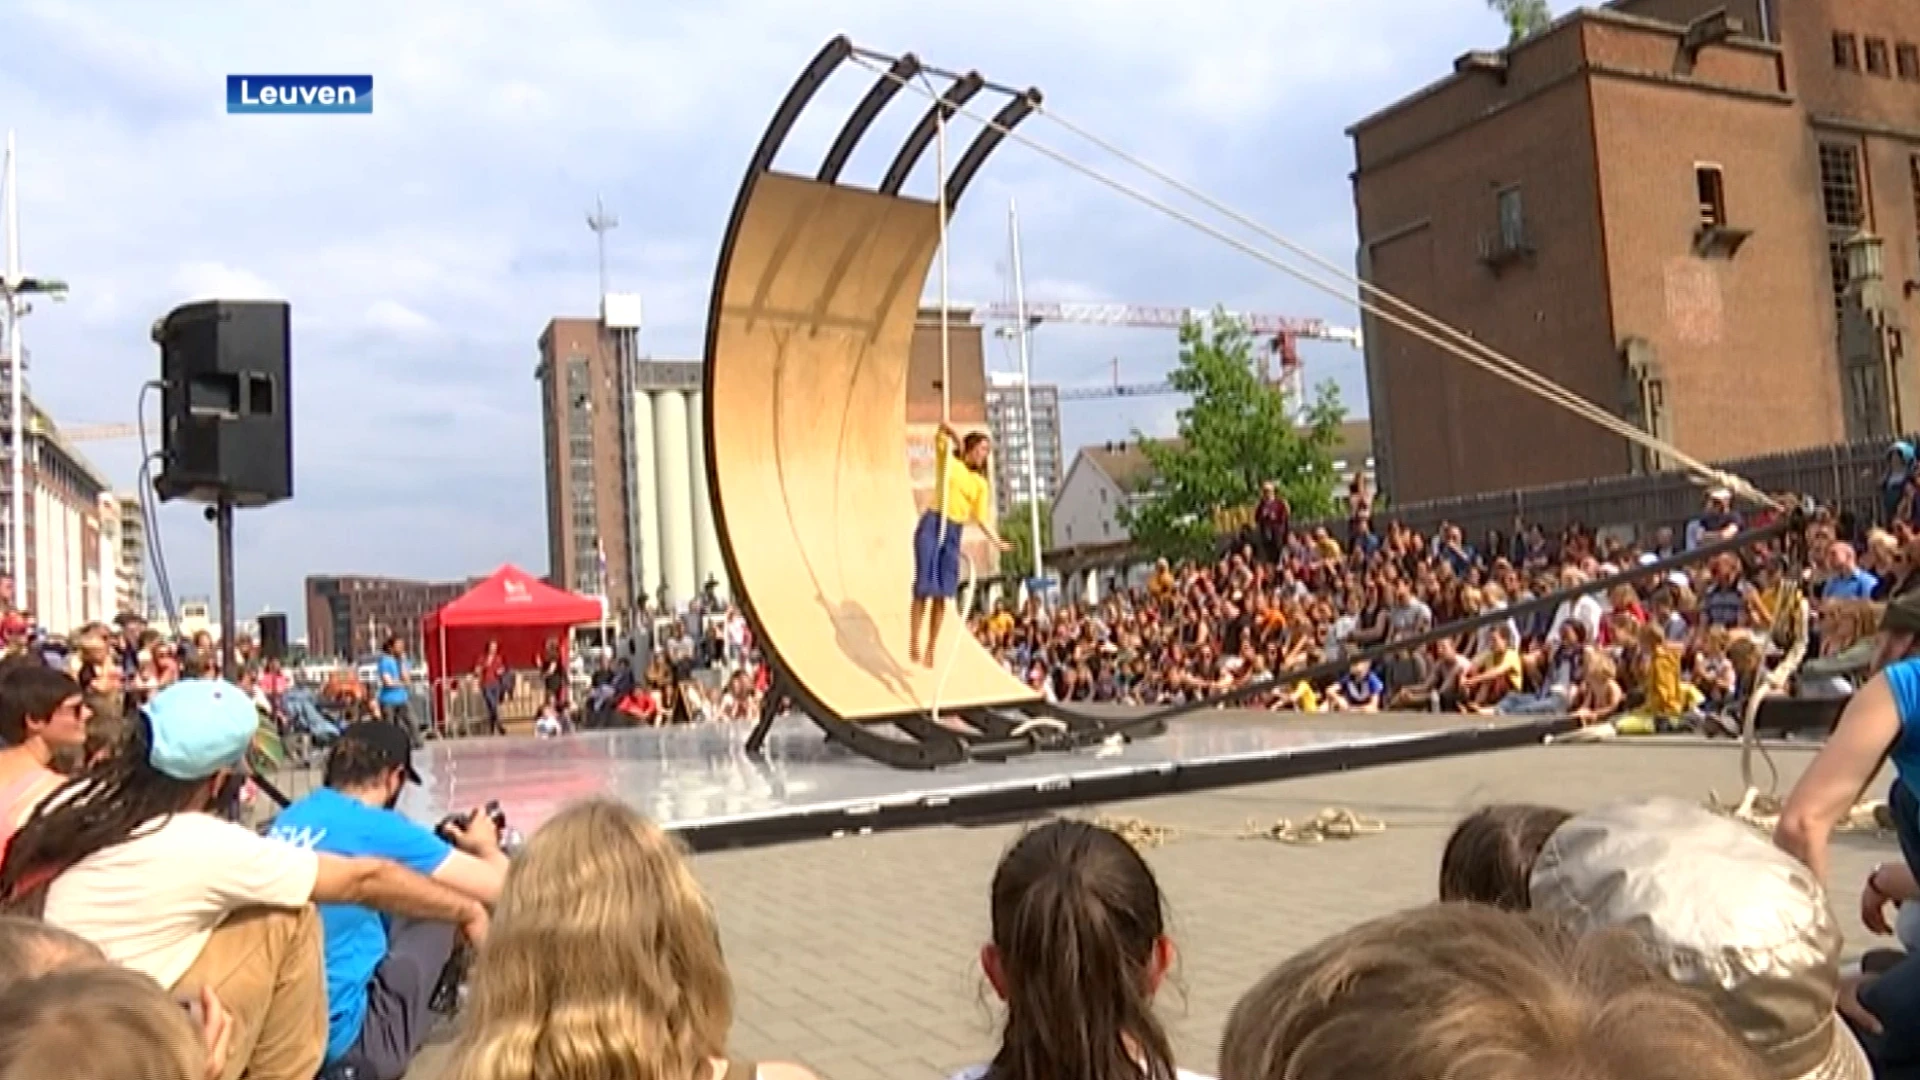 Circusfestival CIRKL krijgt zomerse editie: "Voorstellingen over de hele binnenstad van Leuven"